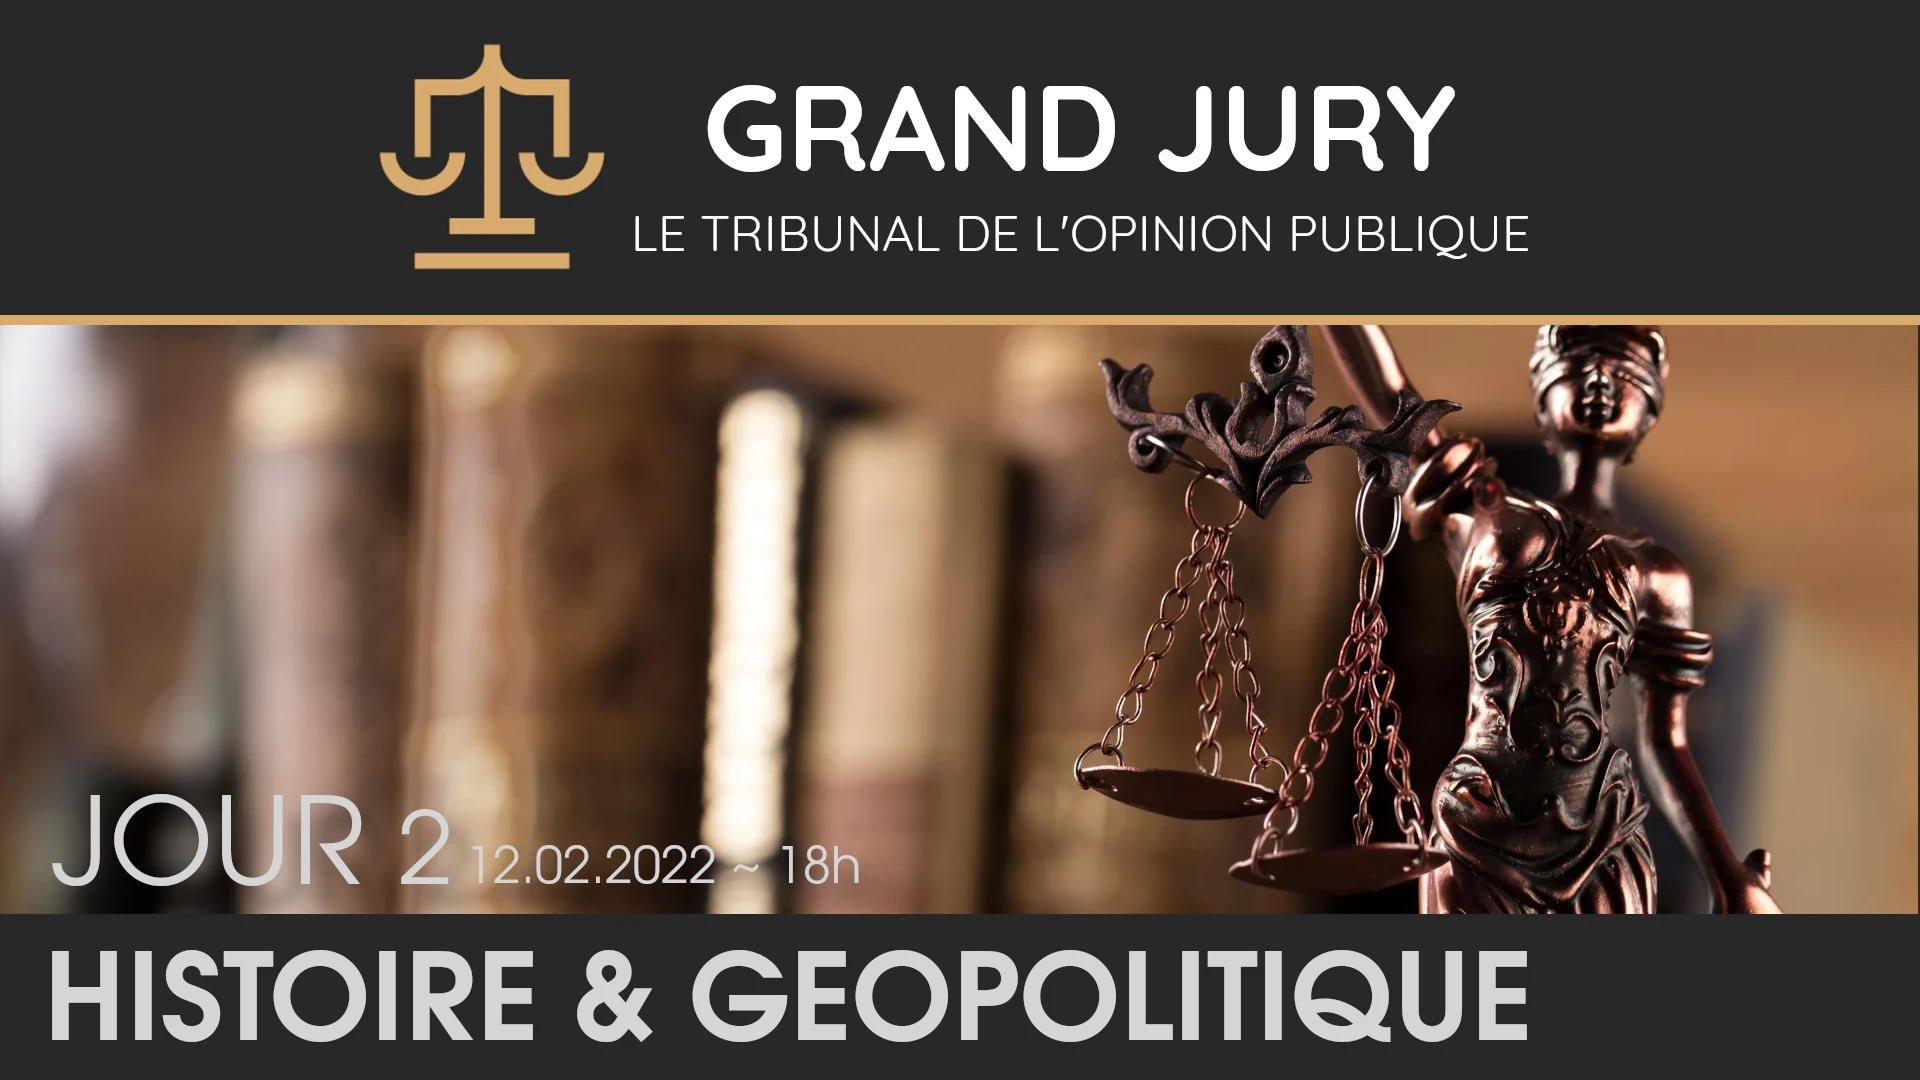 Jour 2 – Grand Jury / Tribunal de l’Opinion Publique